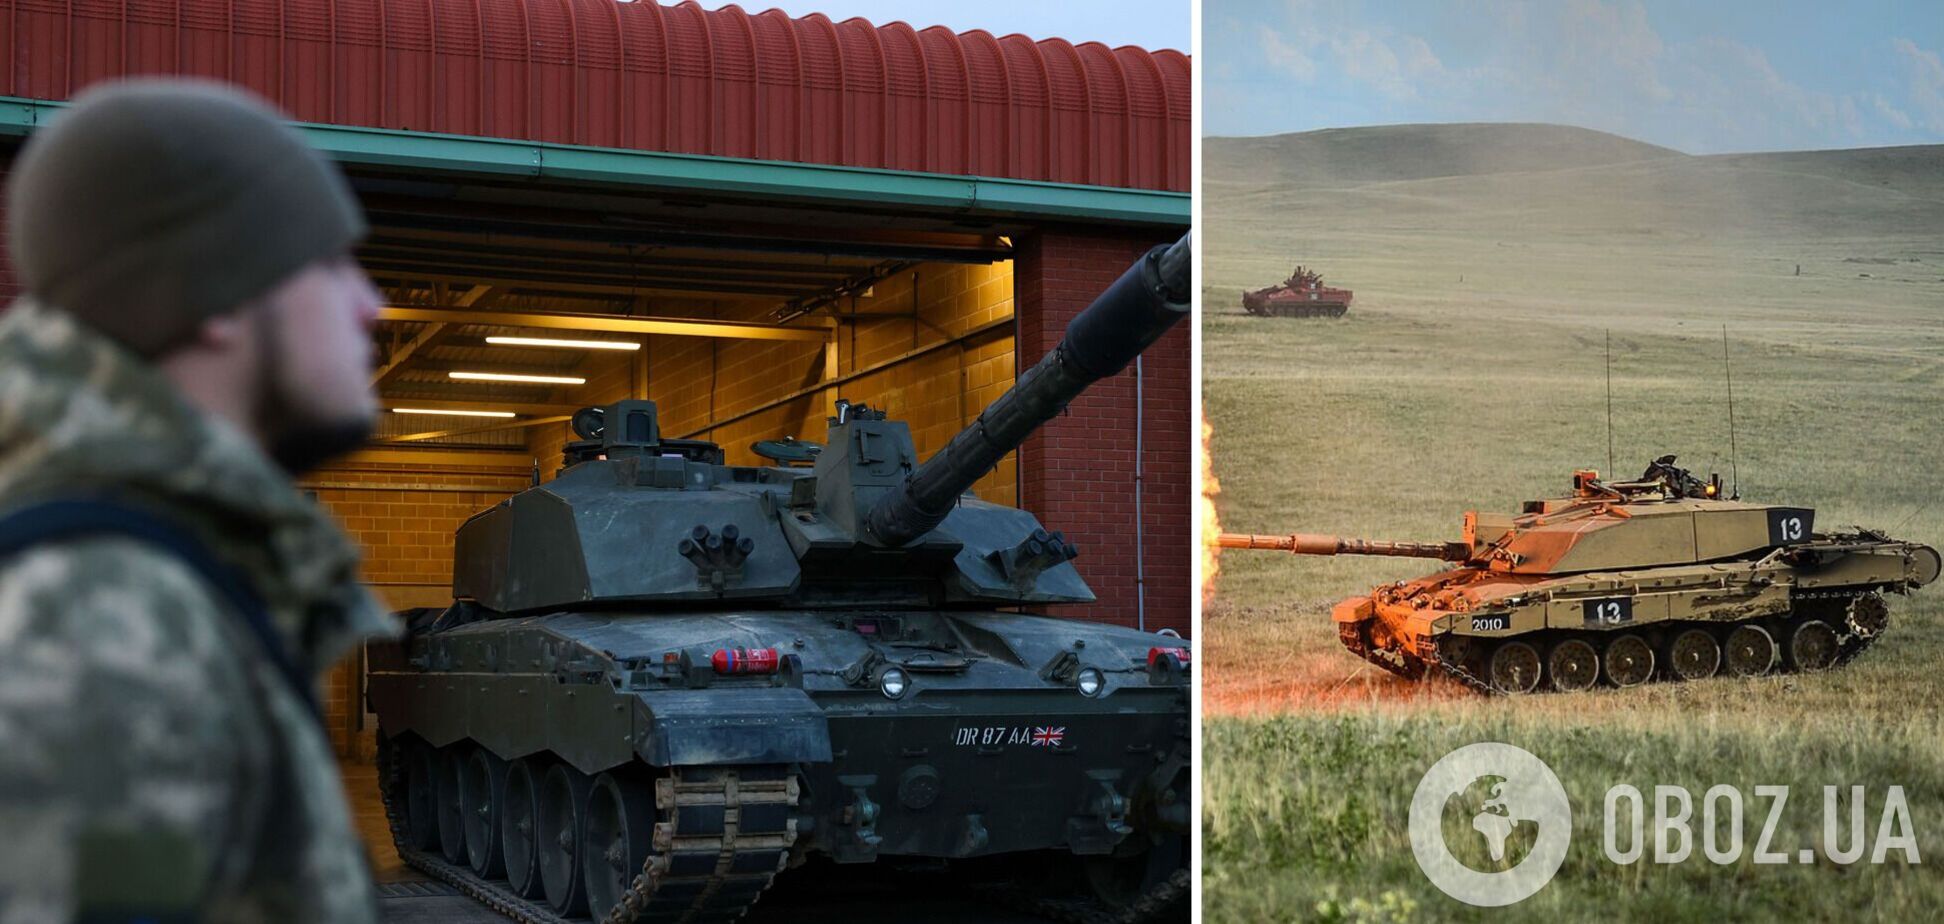 Може бути більш ніж 14 обіцяних: Воллес розповів, коли британські танки Challenger прибудуть в Україну  